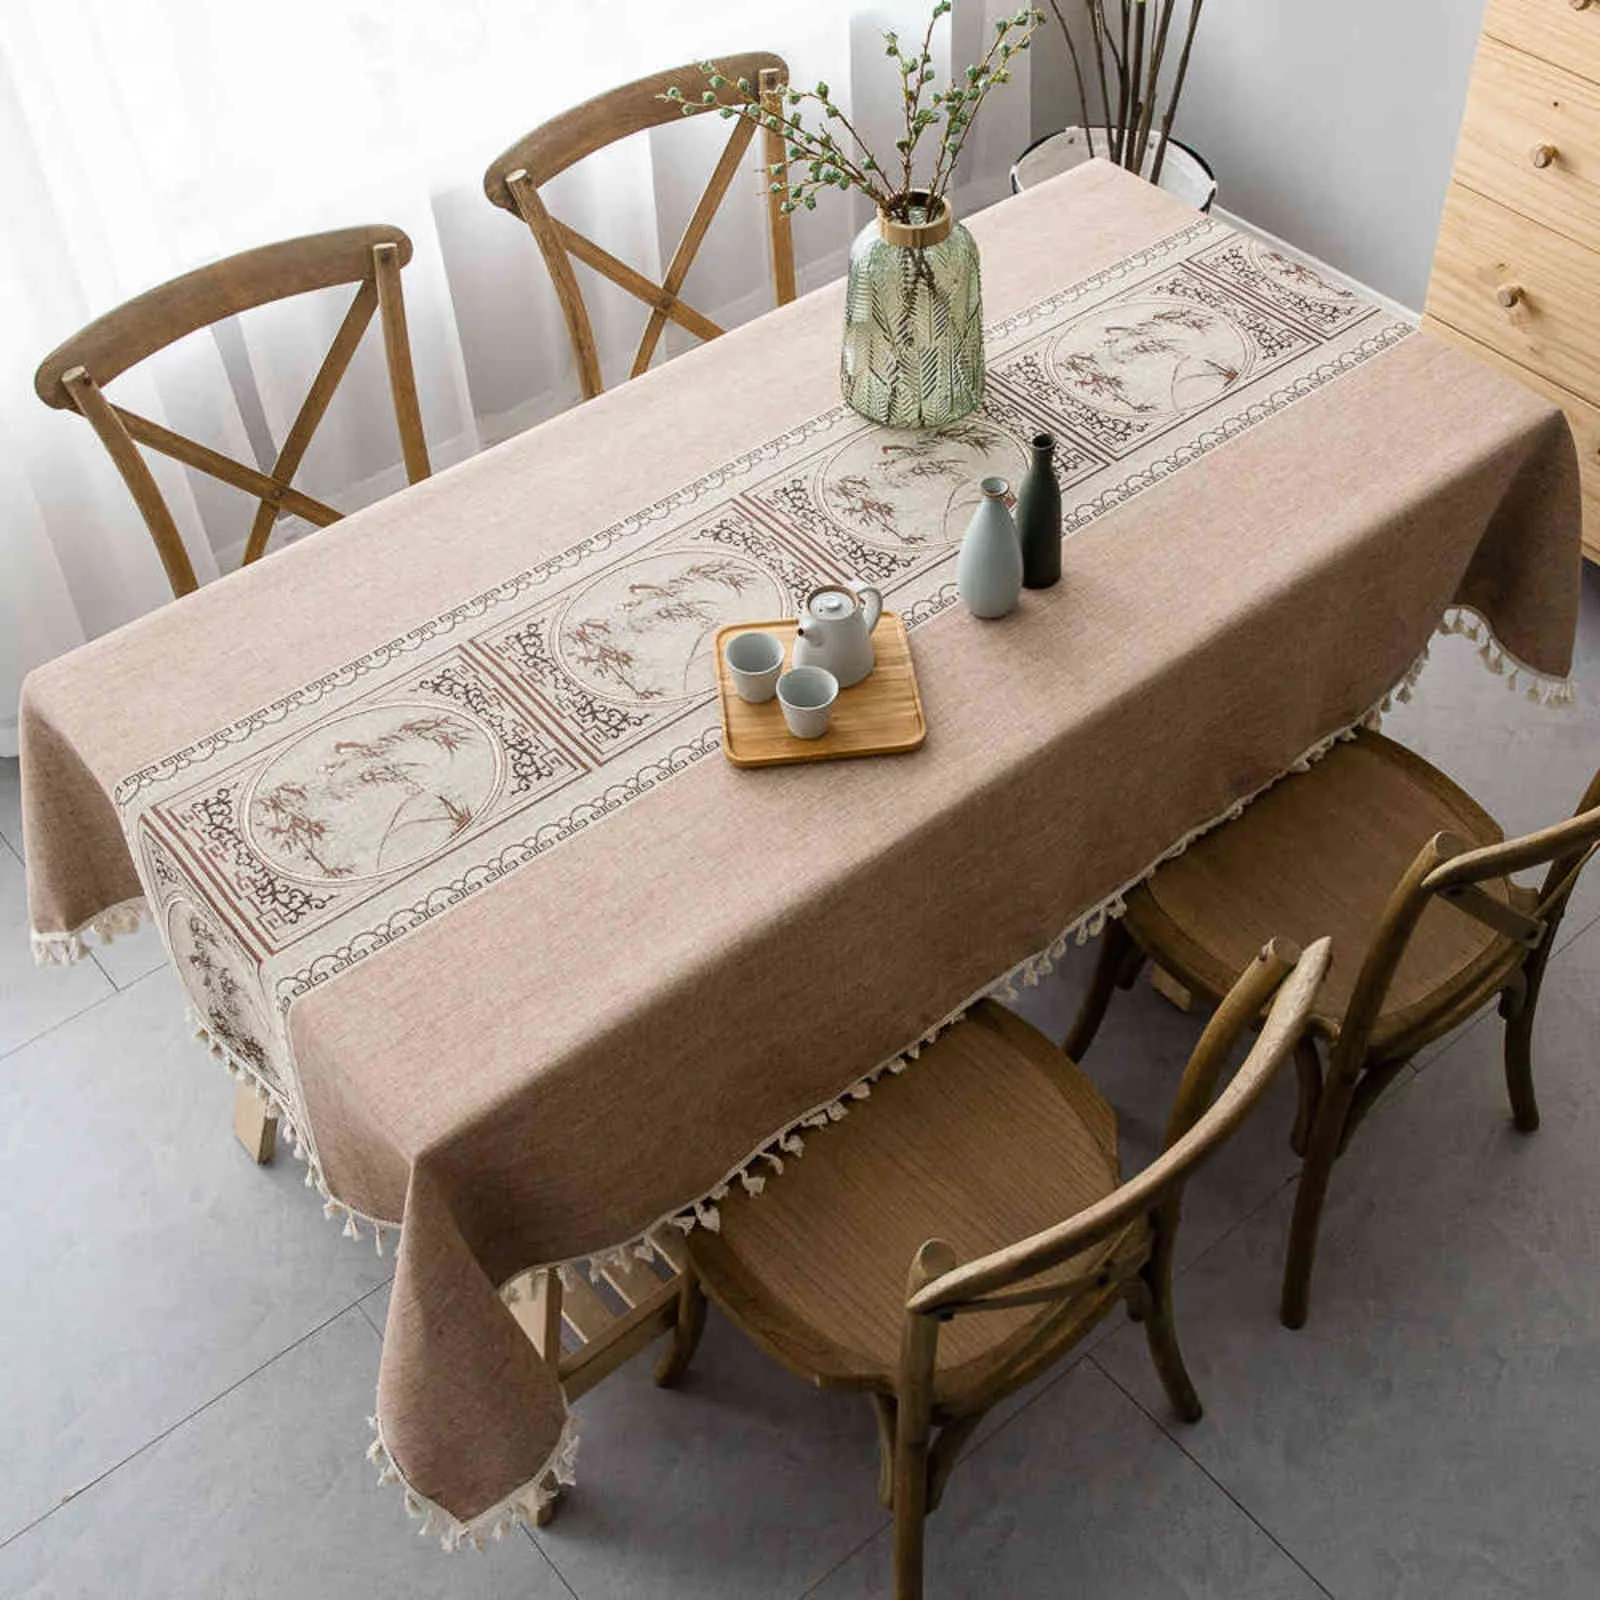 ヨーロッパテーブルクロス生地長方形の綿とコーヒータッセルリネン防塵布ホームキッチン装飾211103